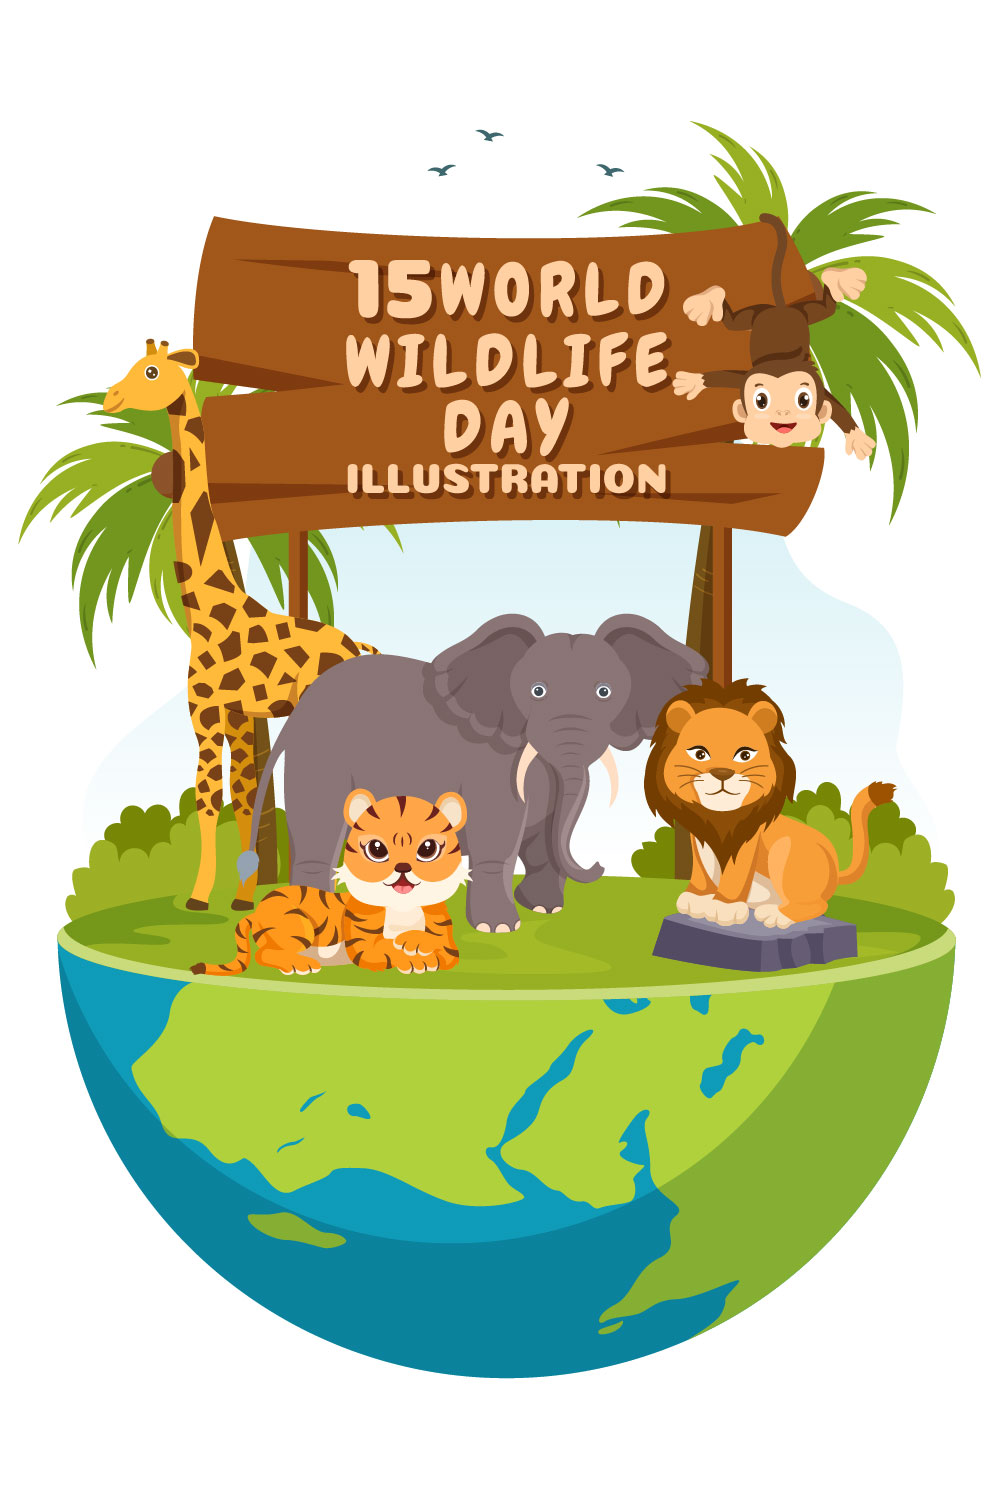 World Wildlife Day Illustration pinterest image.